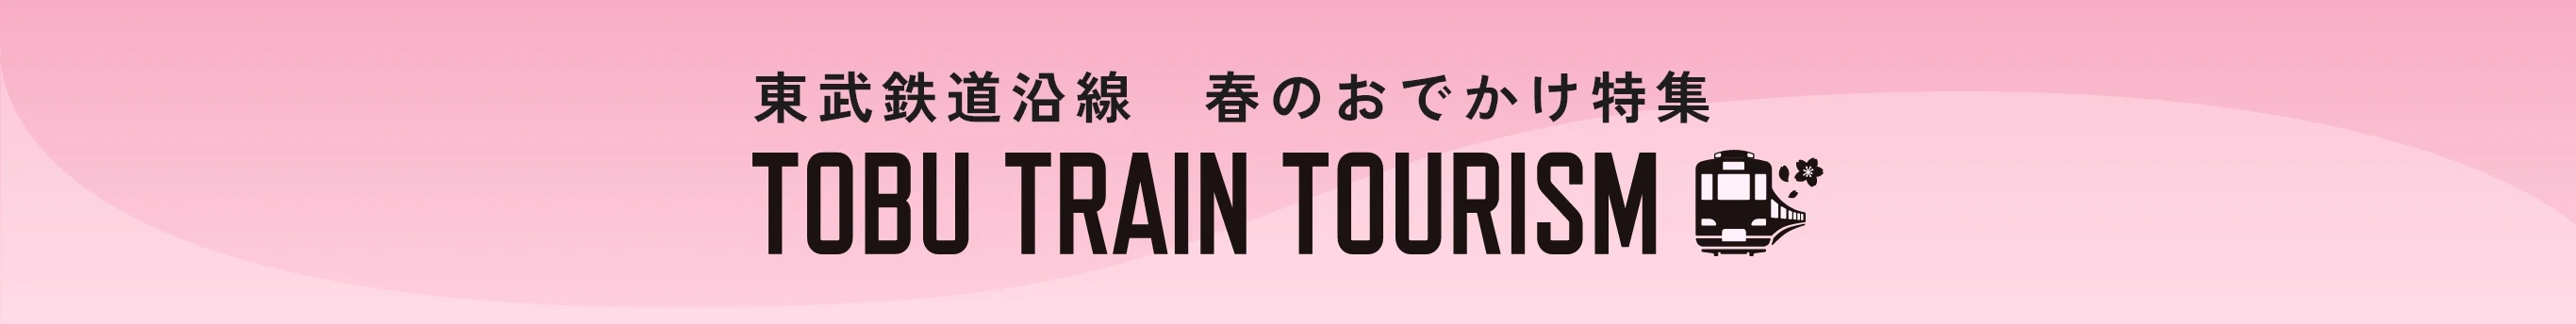 東武鉄道沿線春のおでかけ特集 TOBU TRAIN TOURISM